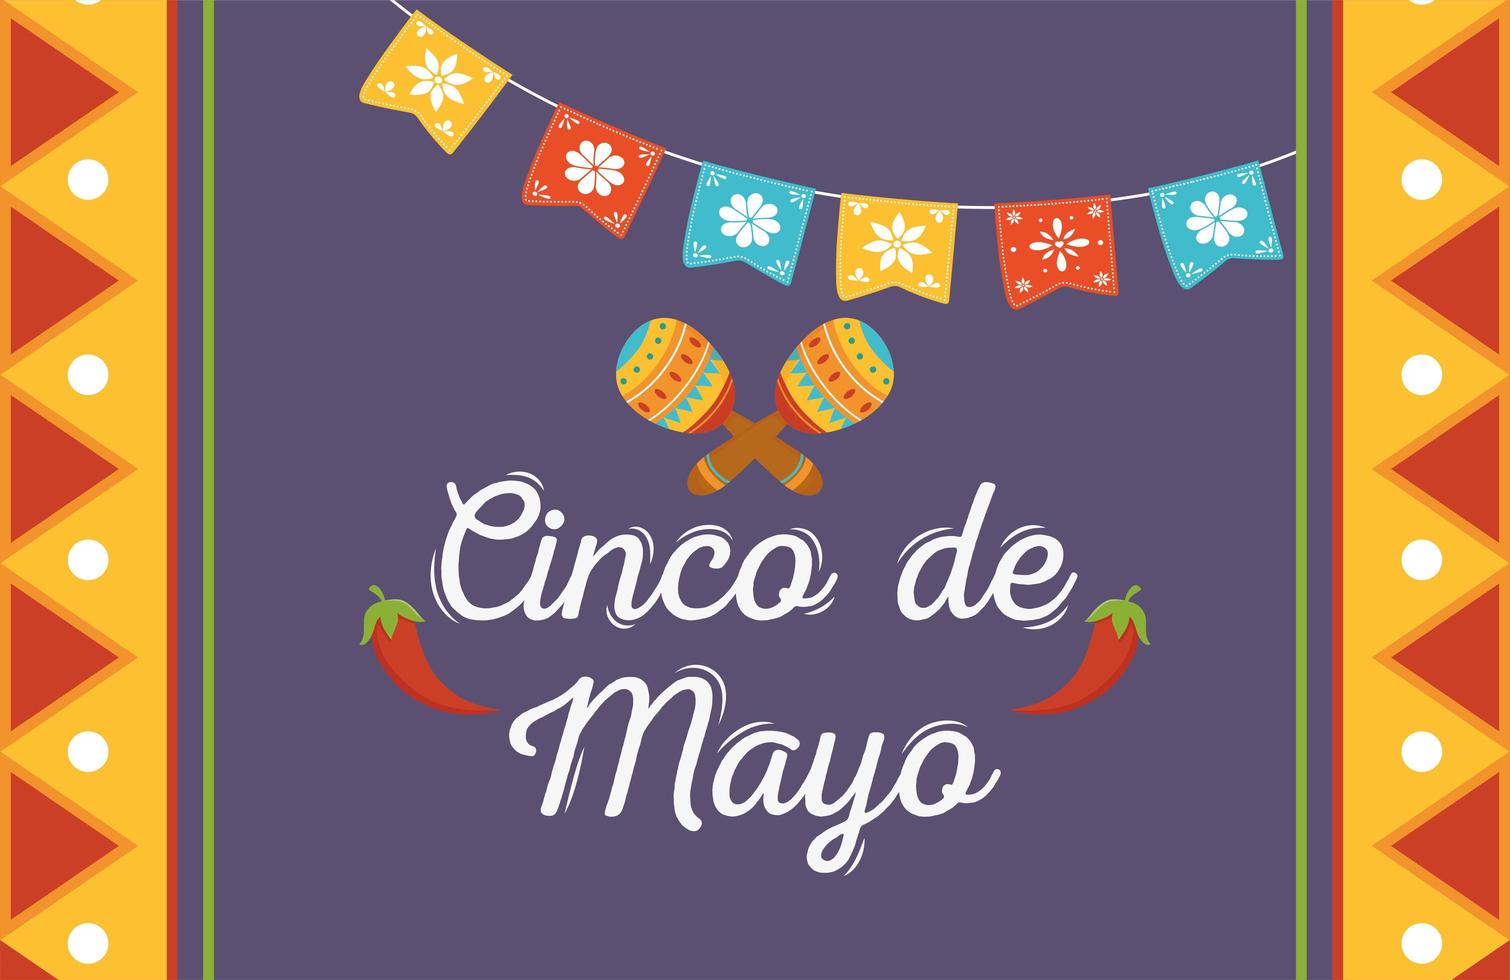 Cinco de mayo maracas fanions célébration mexicaine décoration vecteur